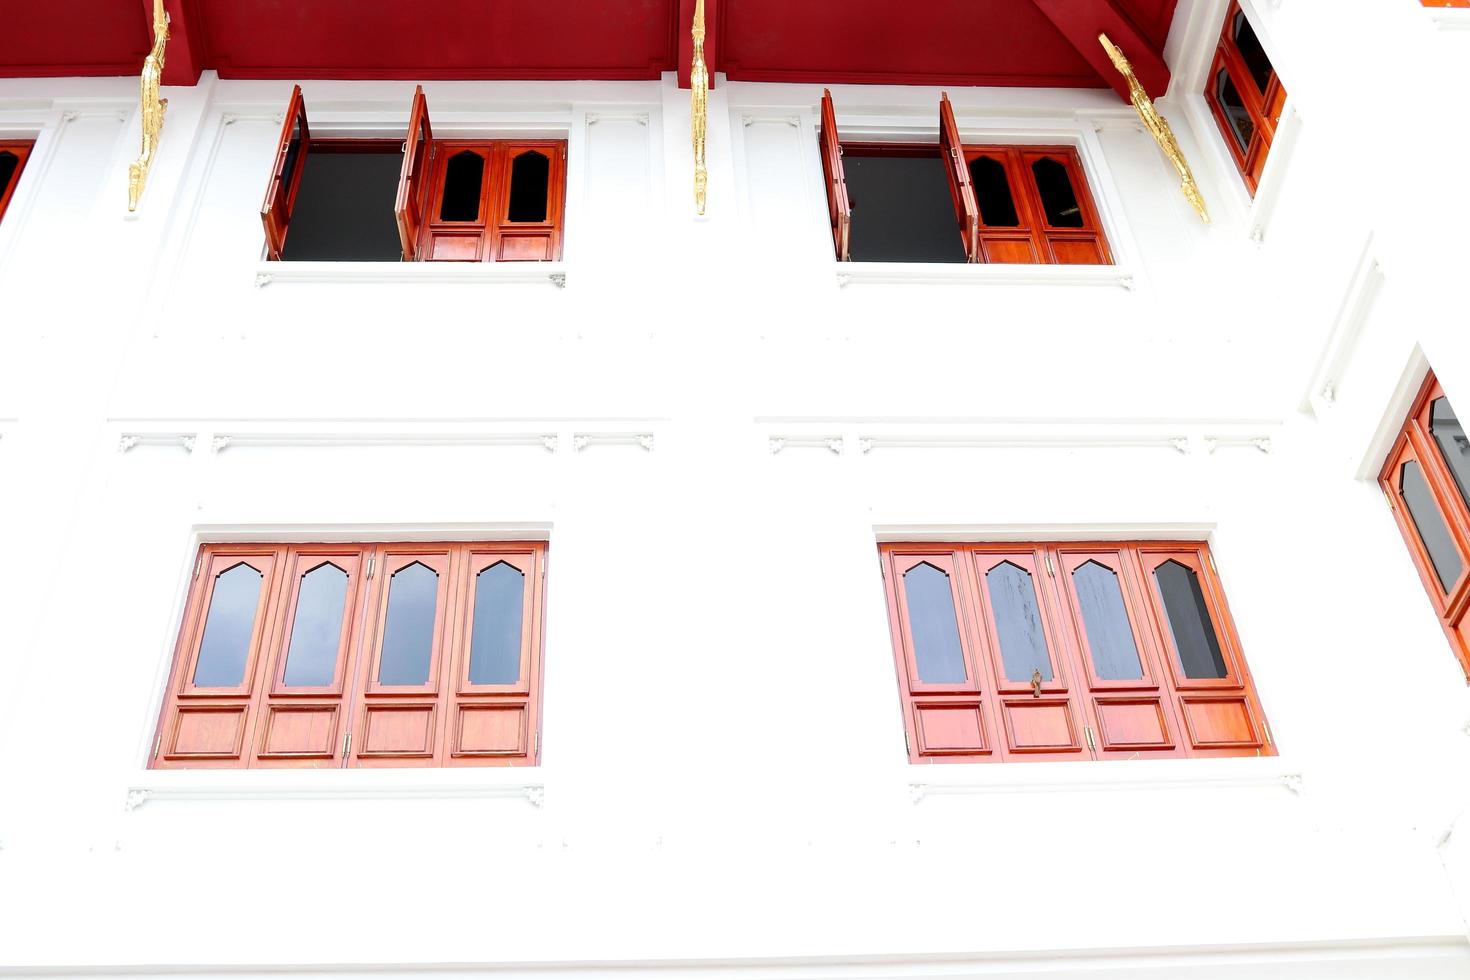 ventanas de madera marrón rojiza y paredes blancas, ventanas de estilo retro en forma de rectángulo, tailandia. foto